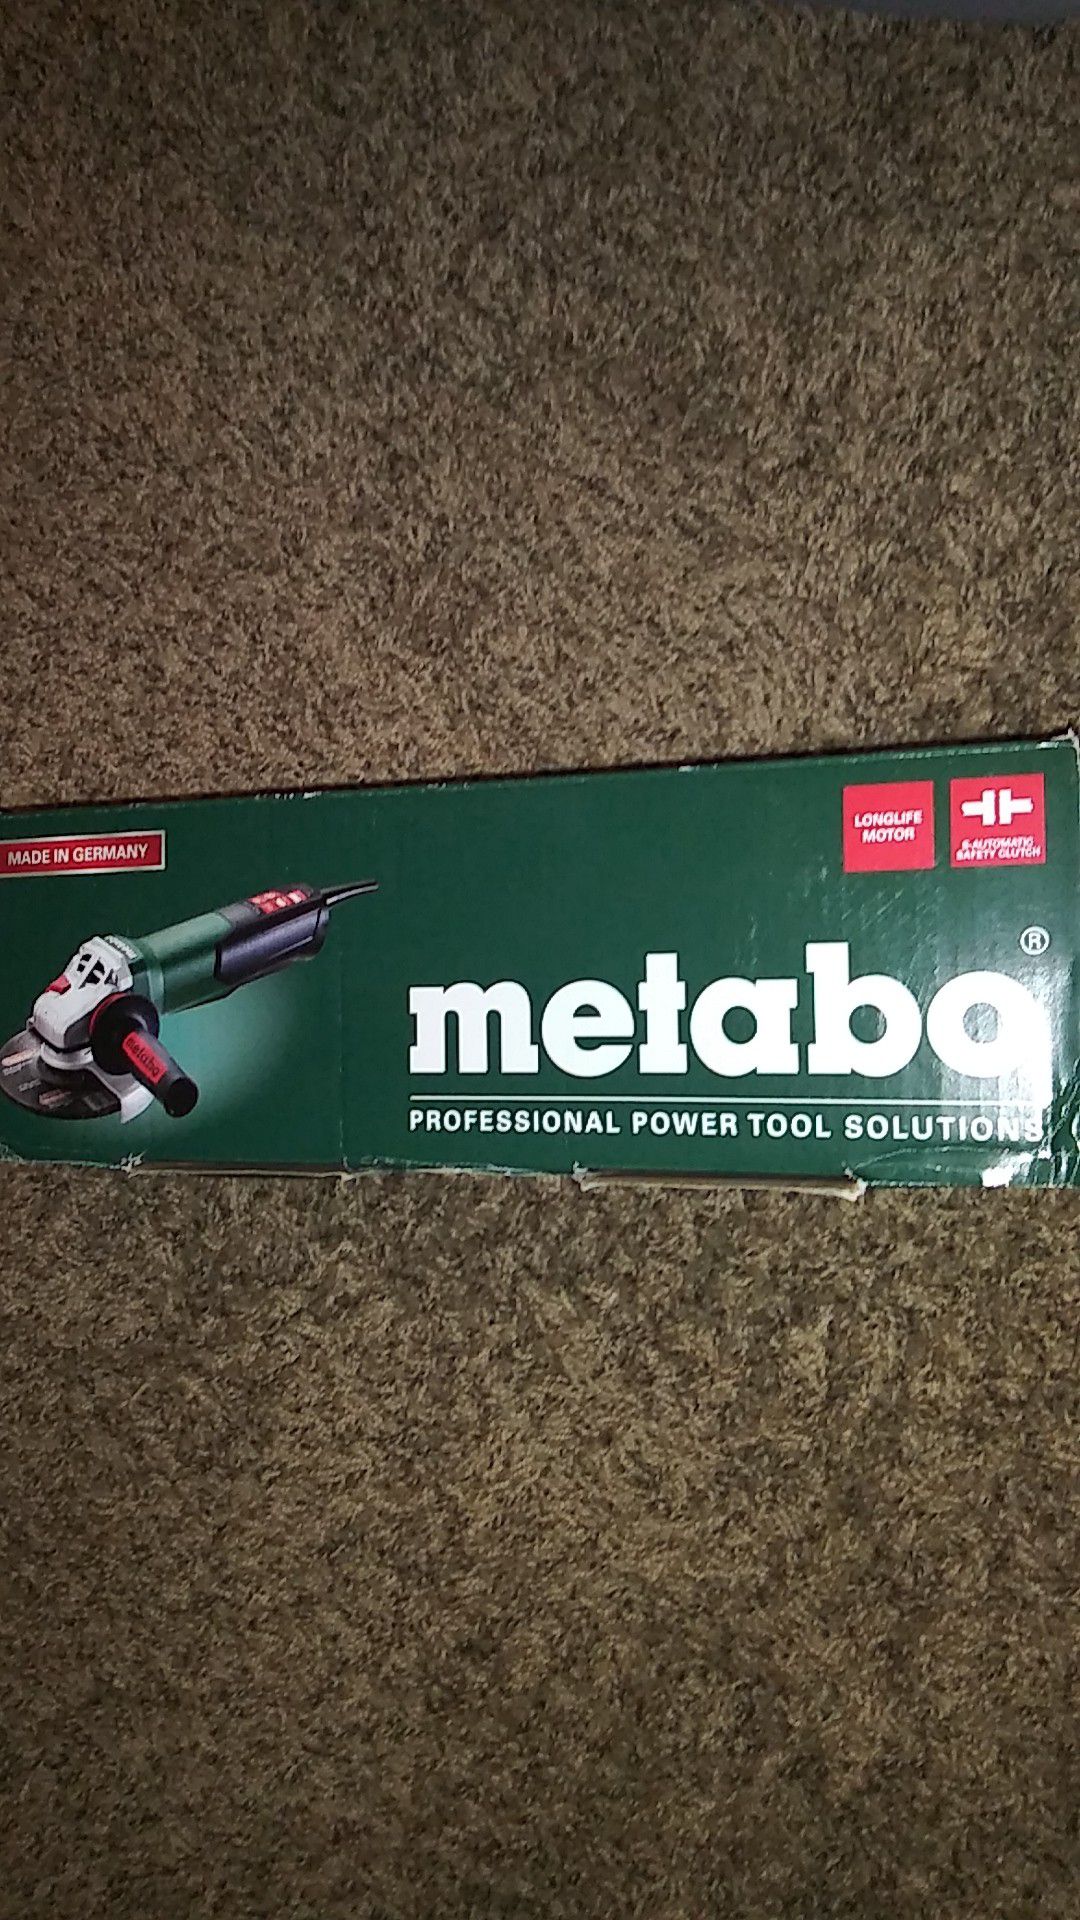 Metabo grinder